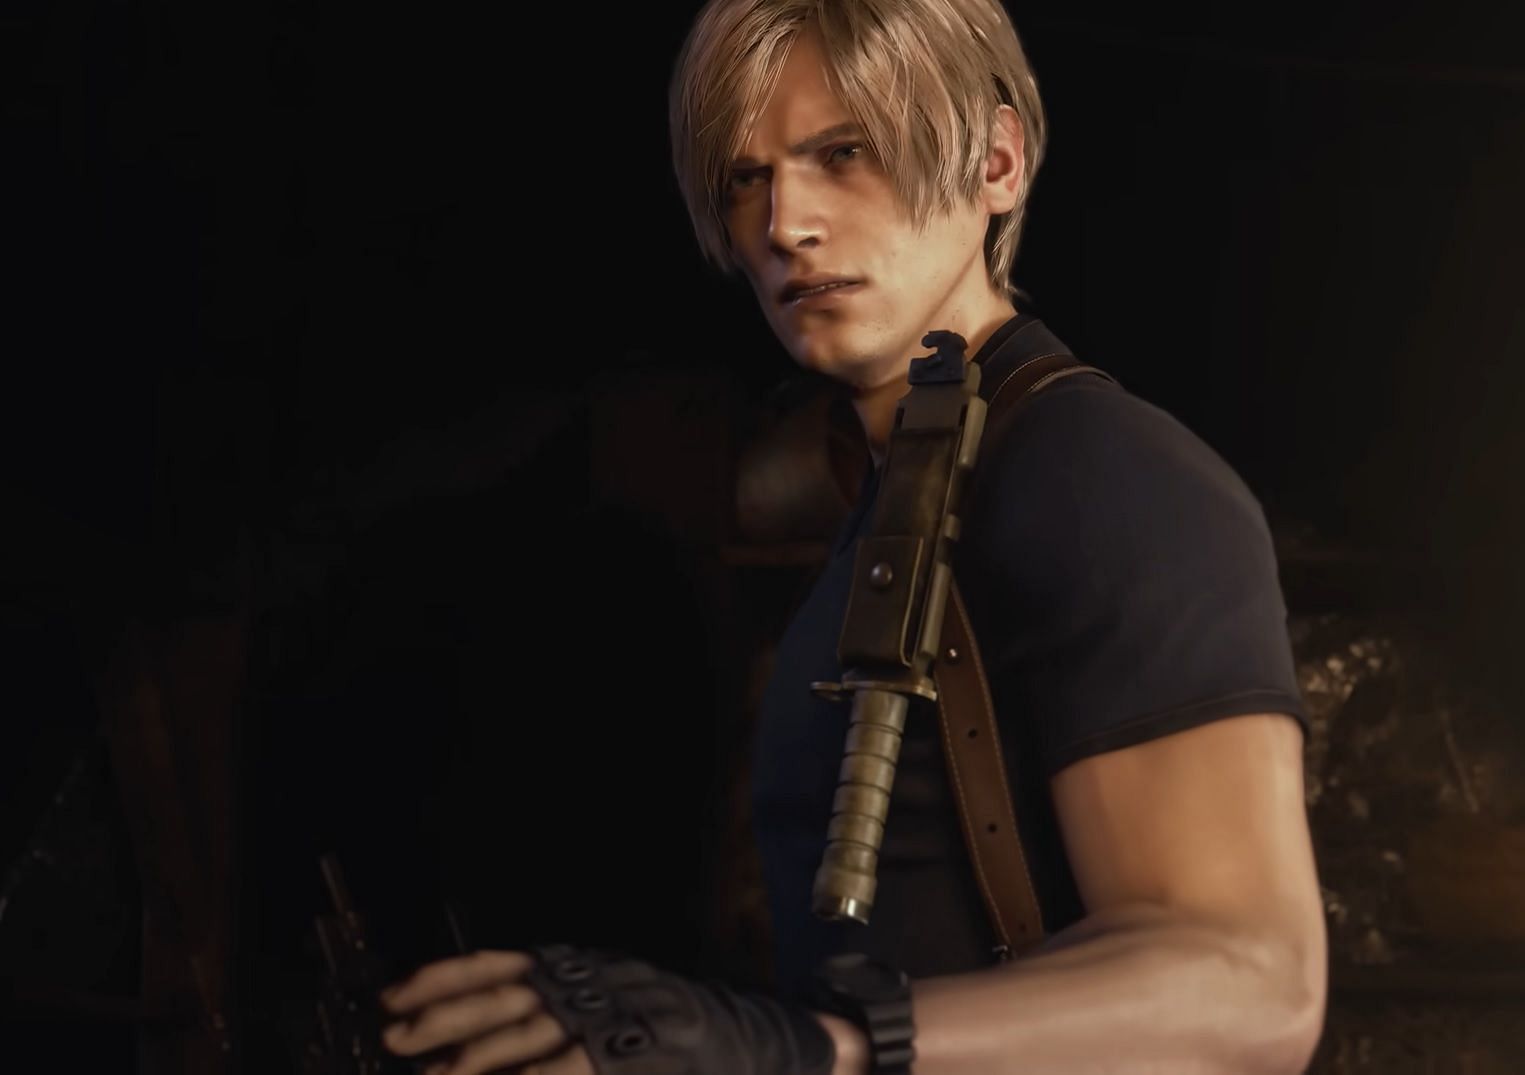 Resident Evil 4 Remake: Leon's Complete Timeline Before & After RE 4